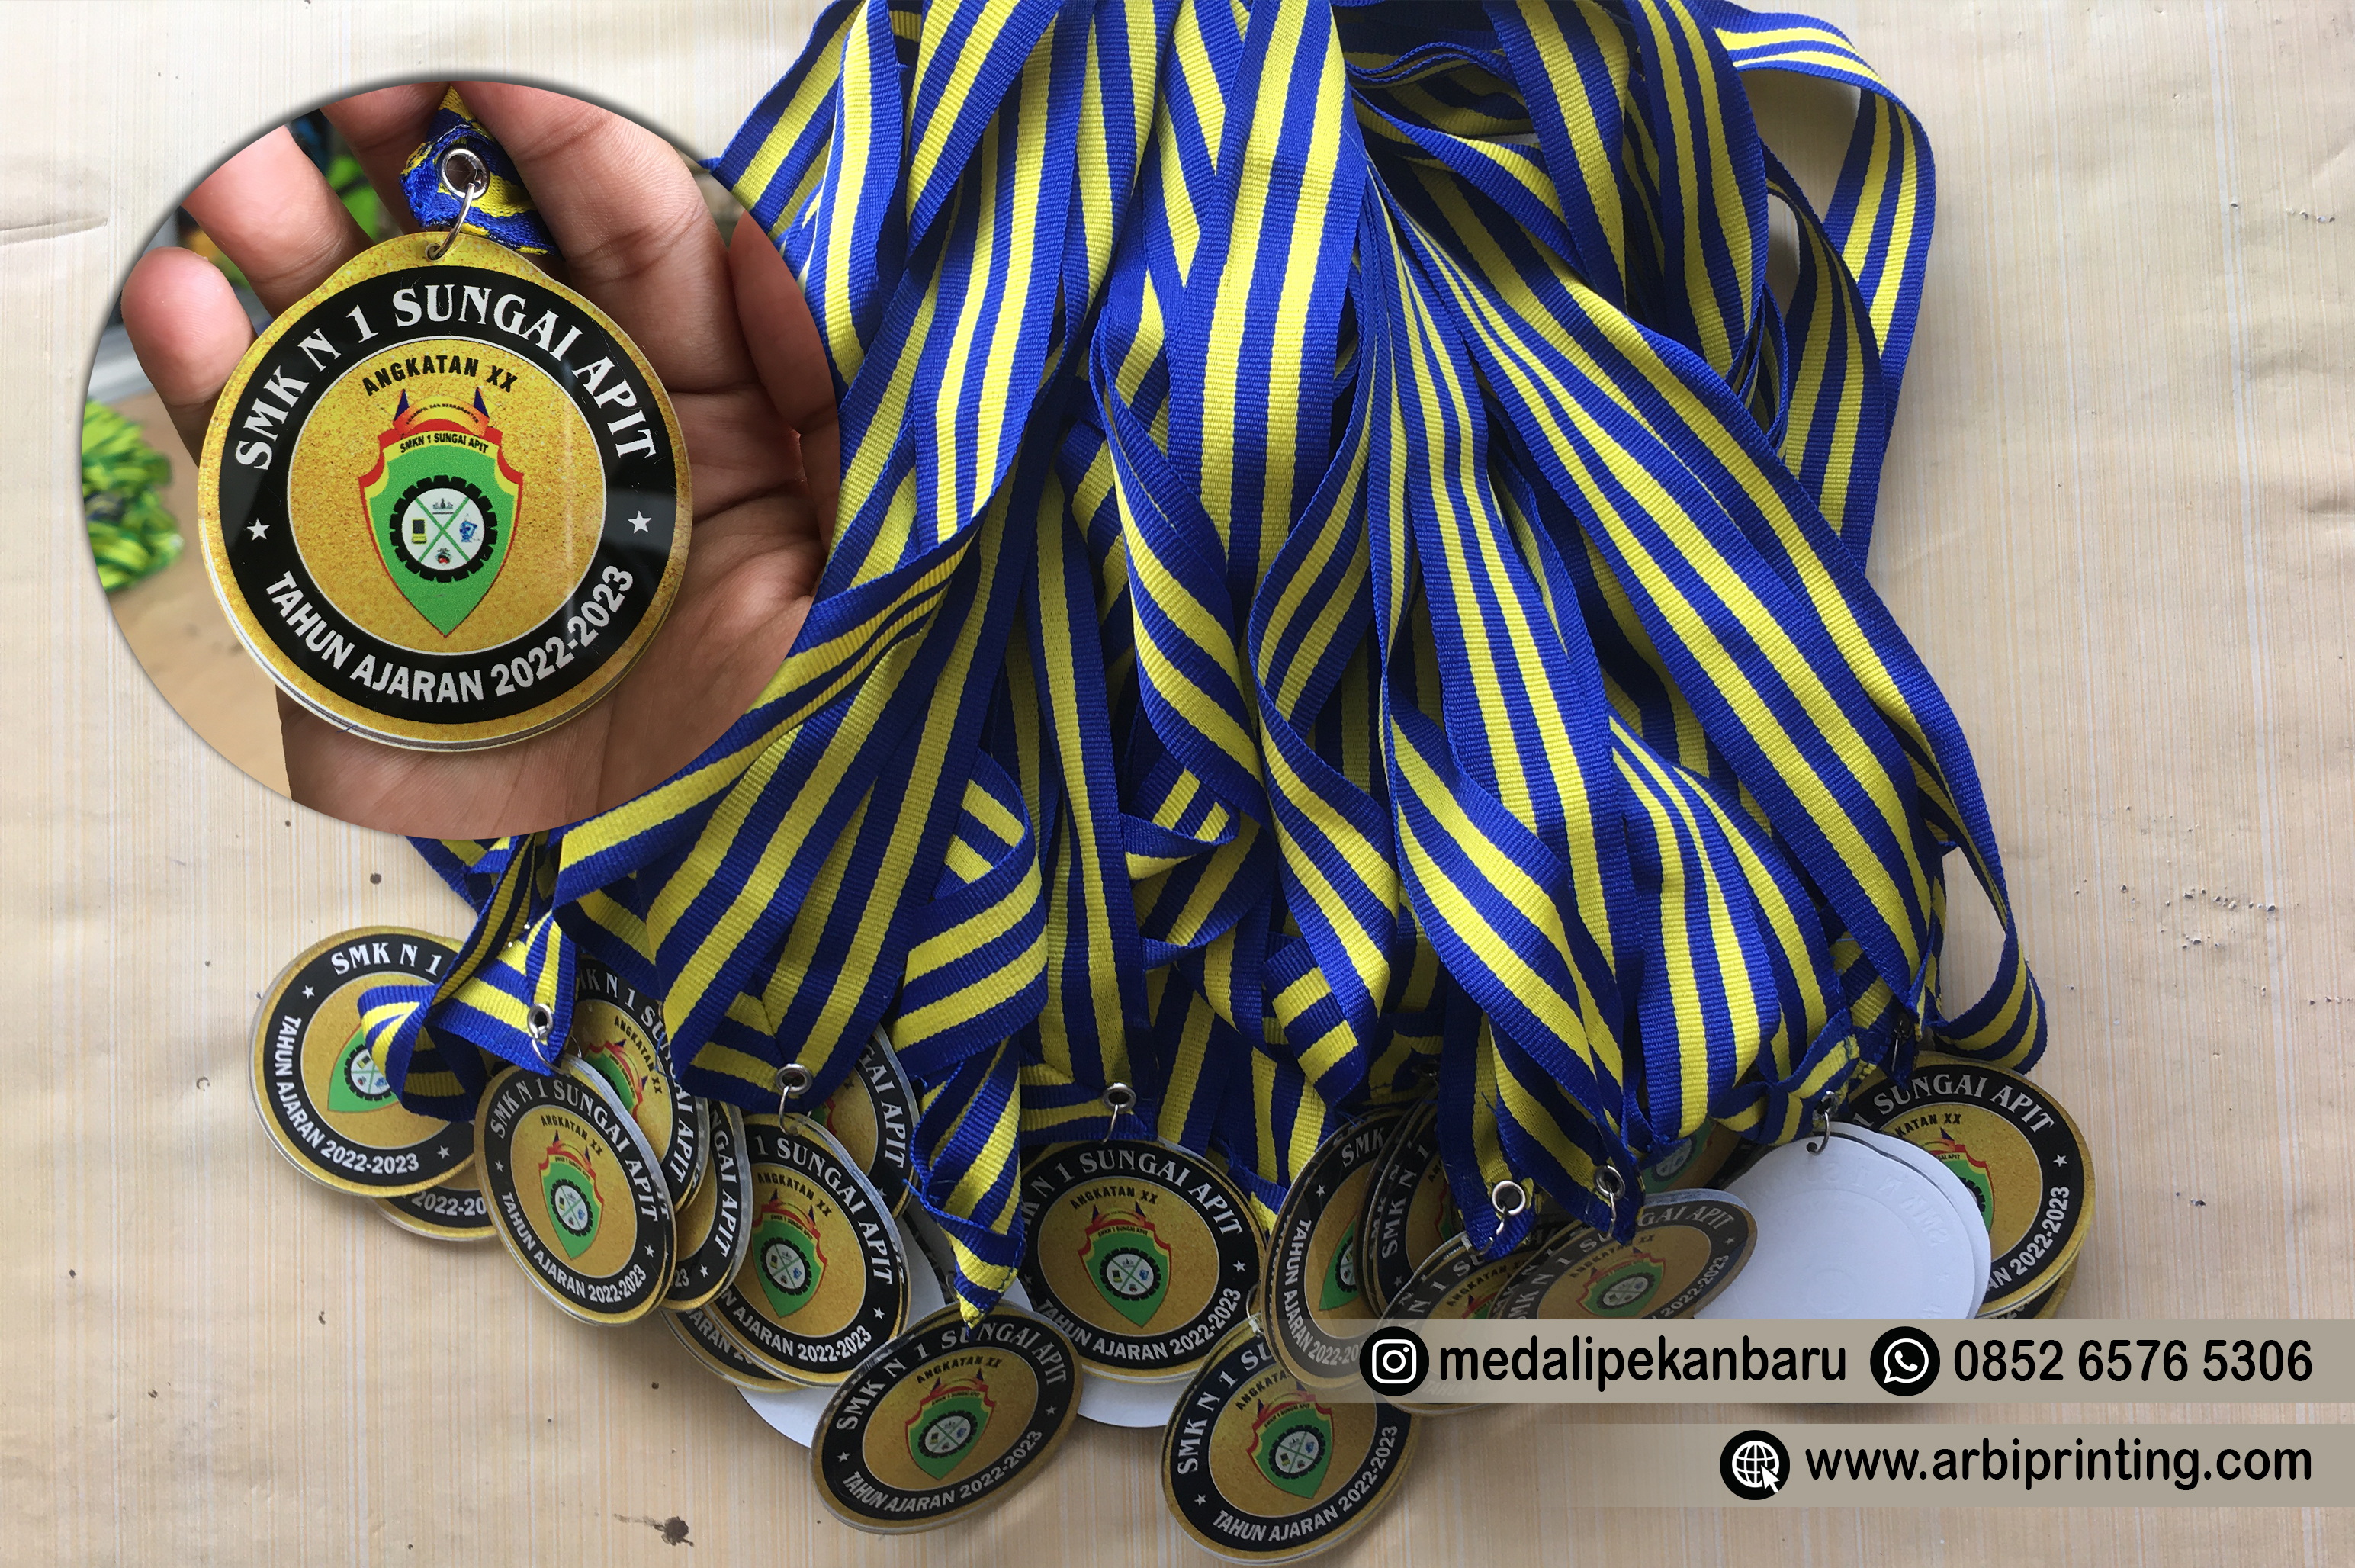 percetakan medali pekanbaru